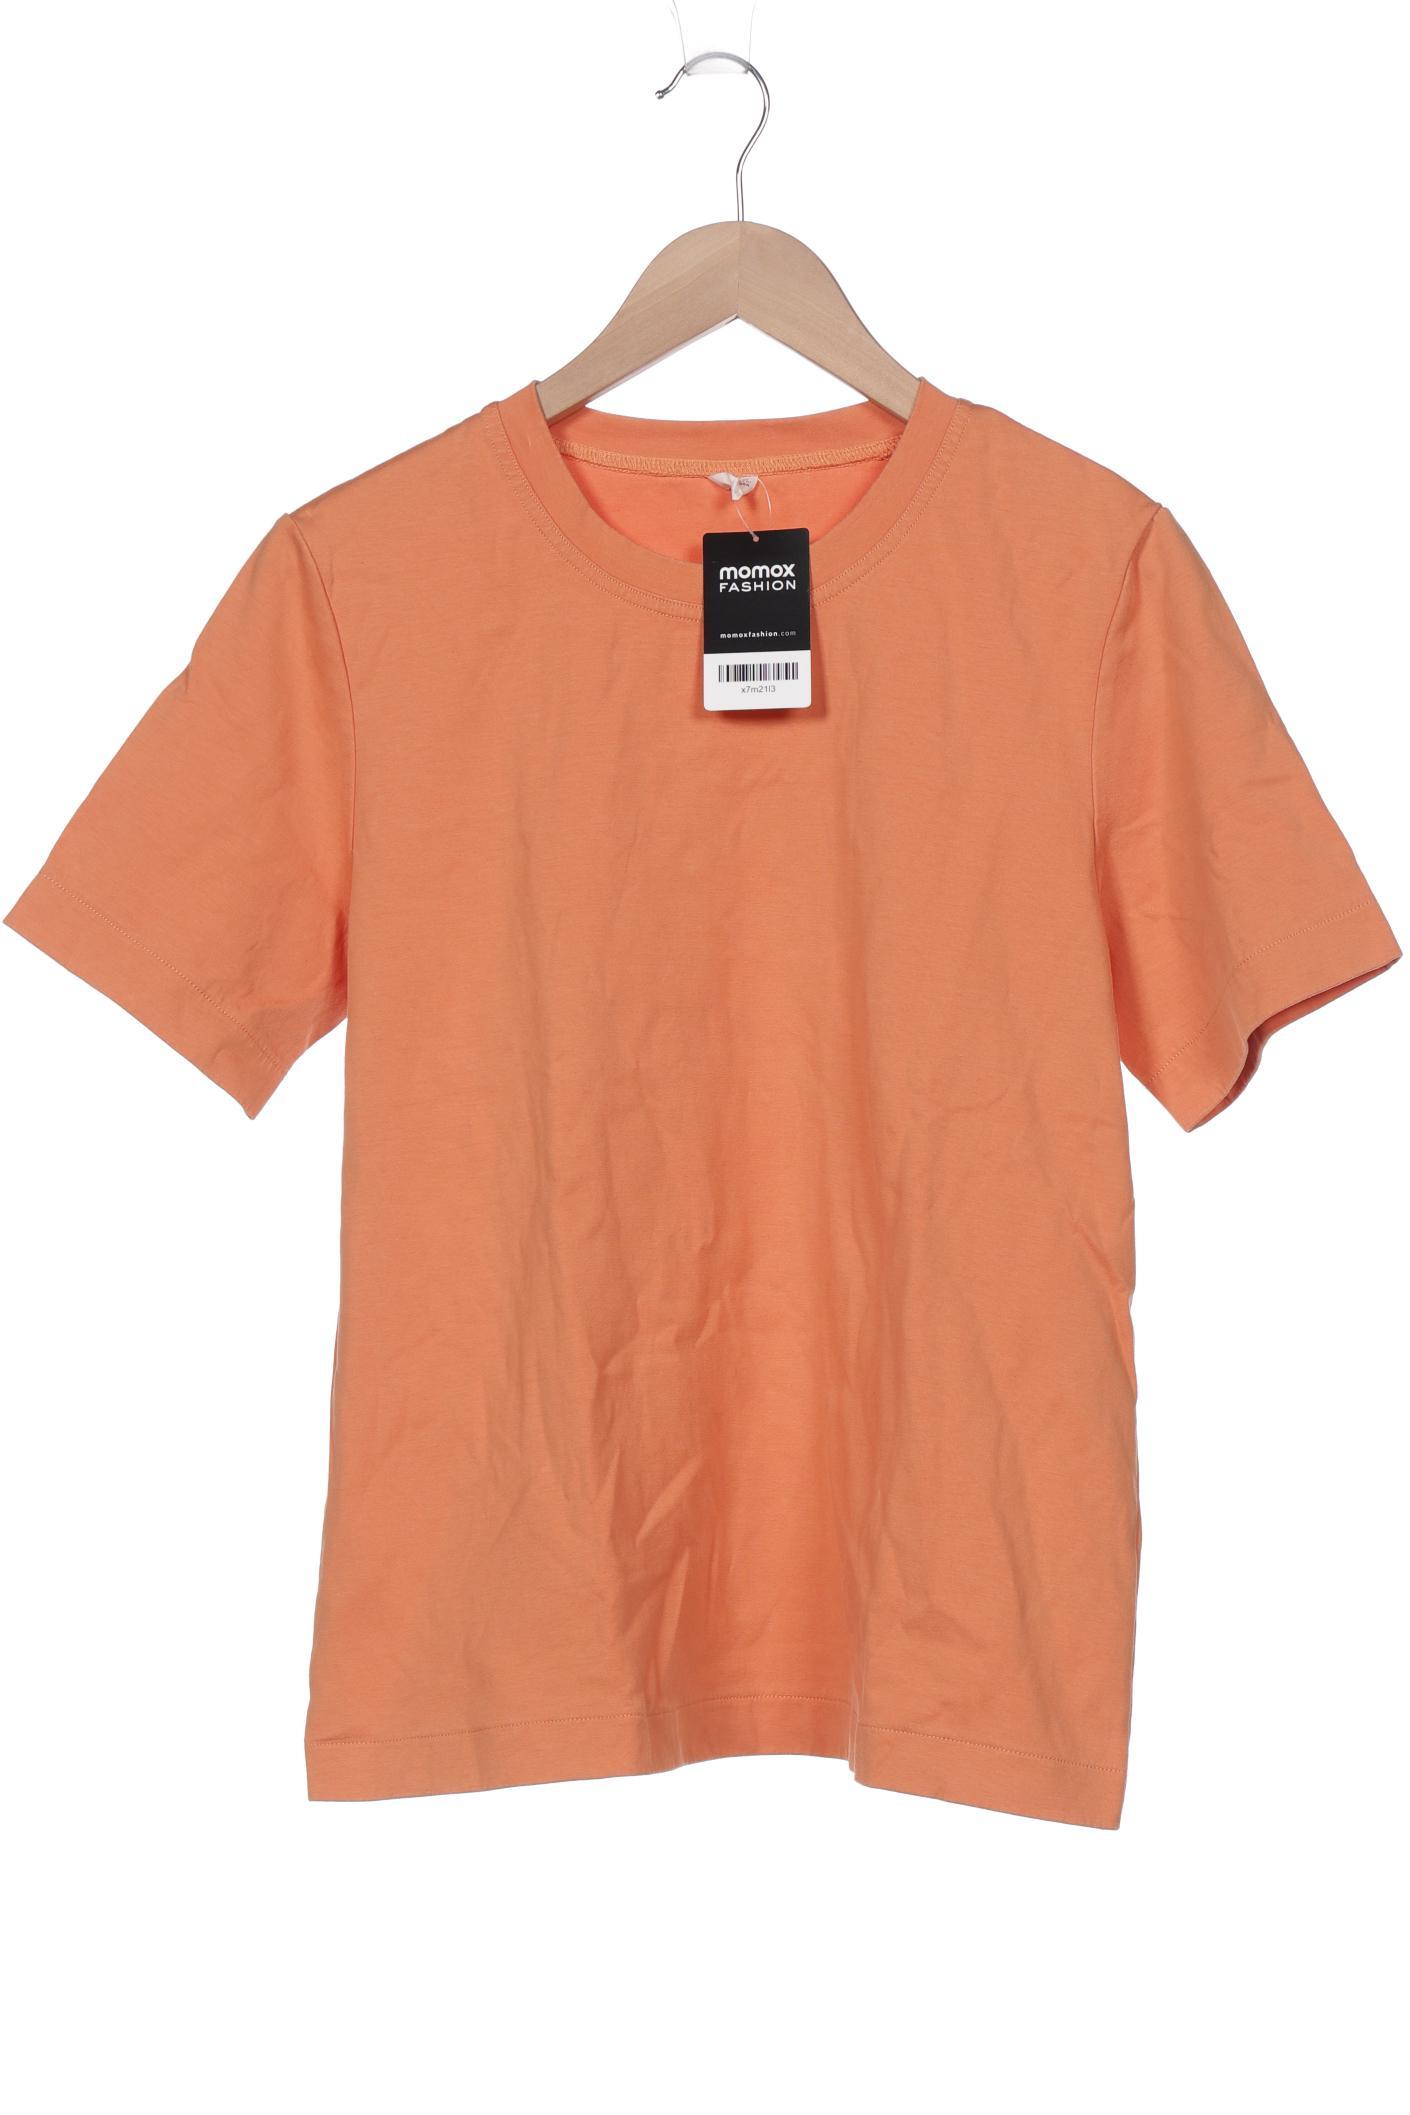 Arket Damen T-Shirt, orange, Gr. 38 von Arket